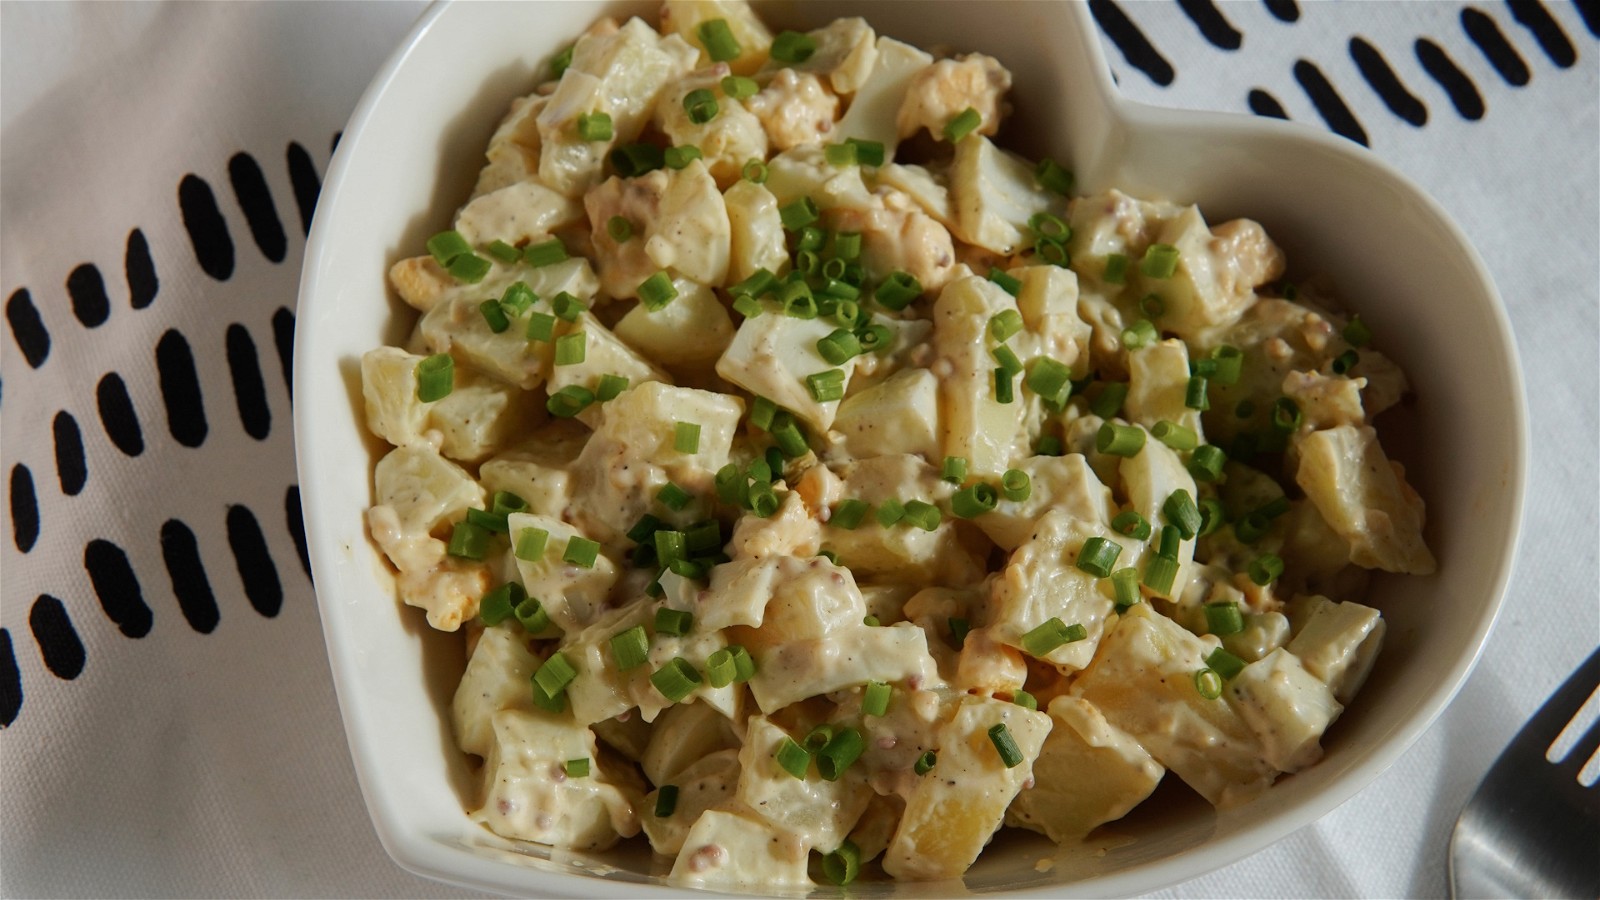 Image of Potato and Egg Salad